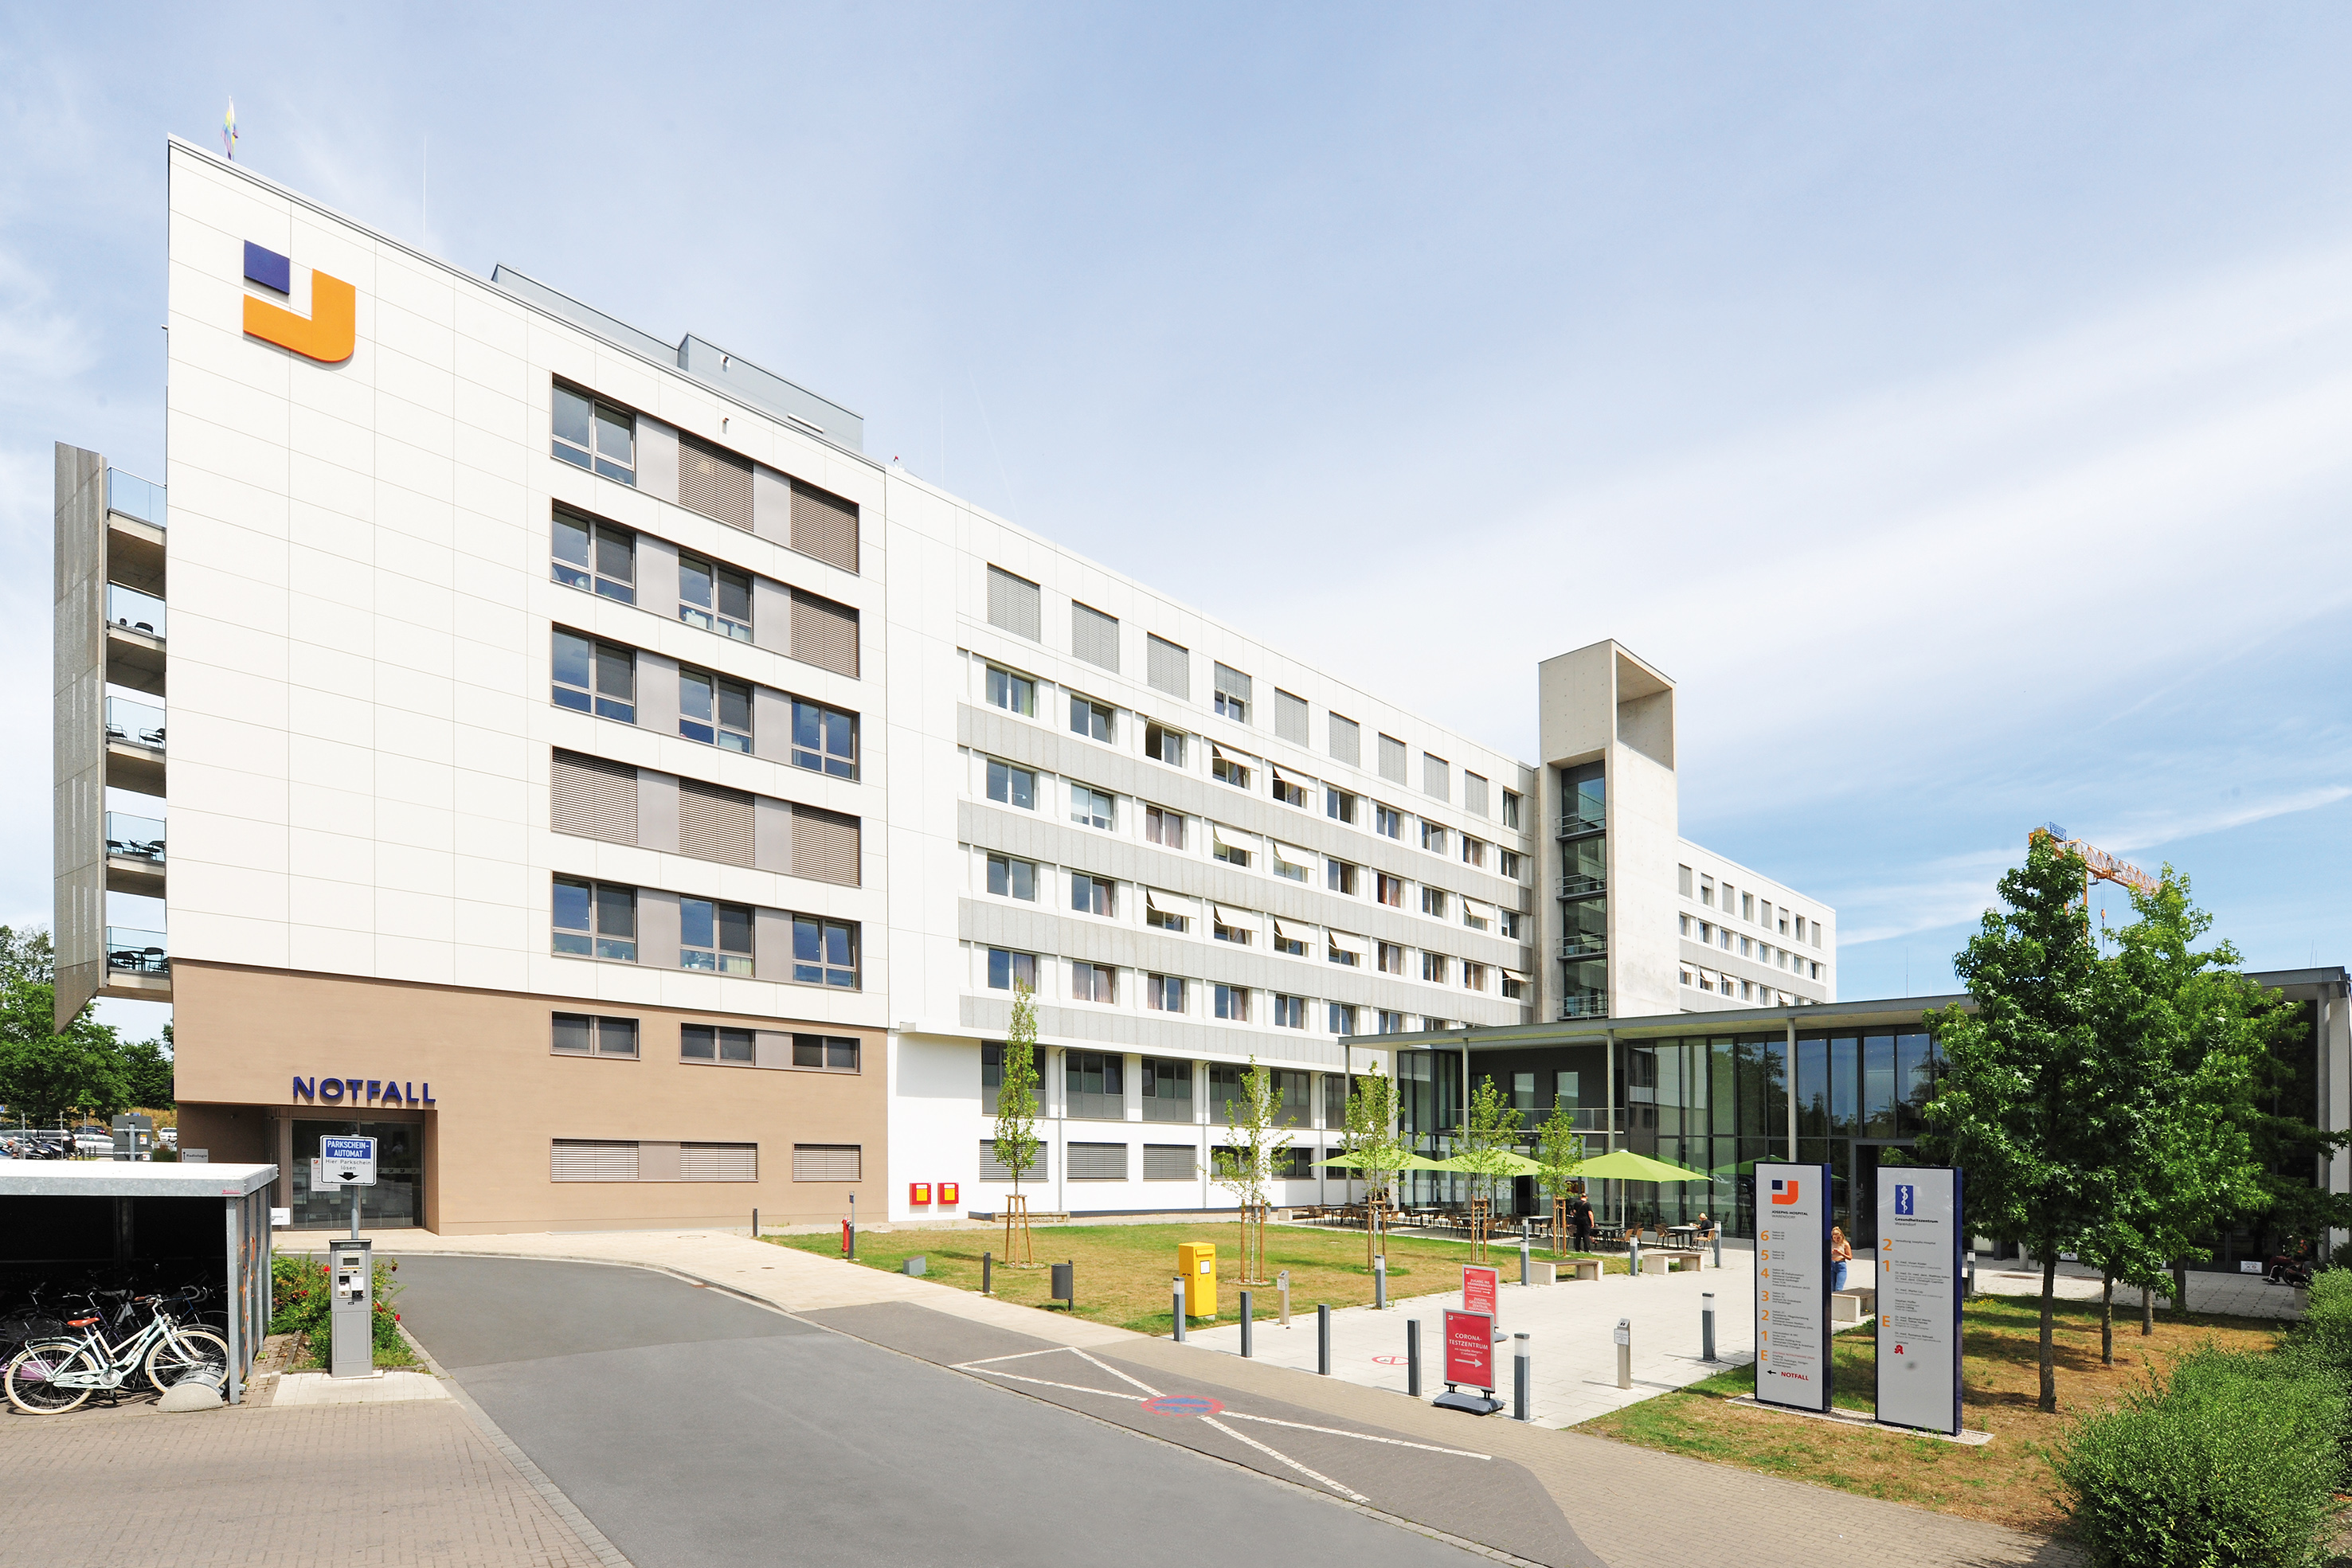 Le nouveau bâtiment de sept étages est une extension de la clinique Josephs Hospital de Warendorf (Allemagne). Il abrite le service des urgences, une unité de soins intensifs et des chambres modernes pour les patients.